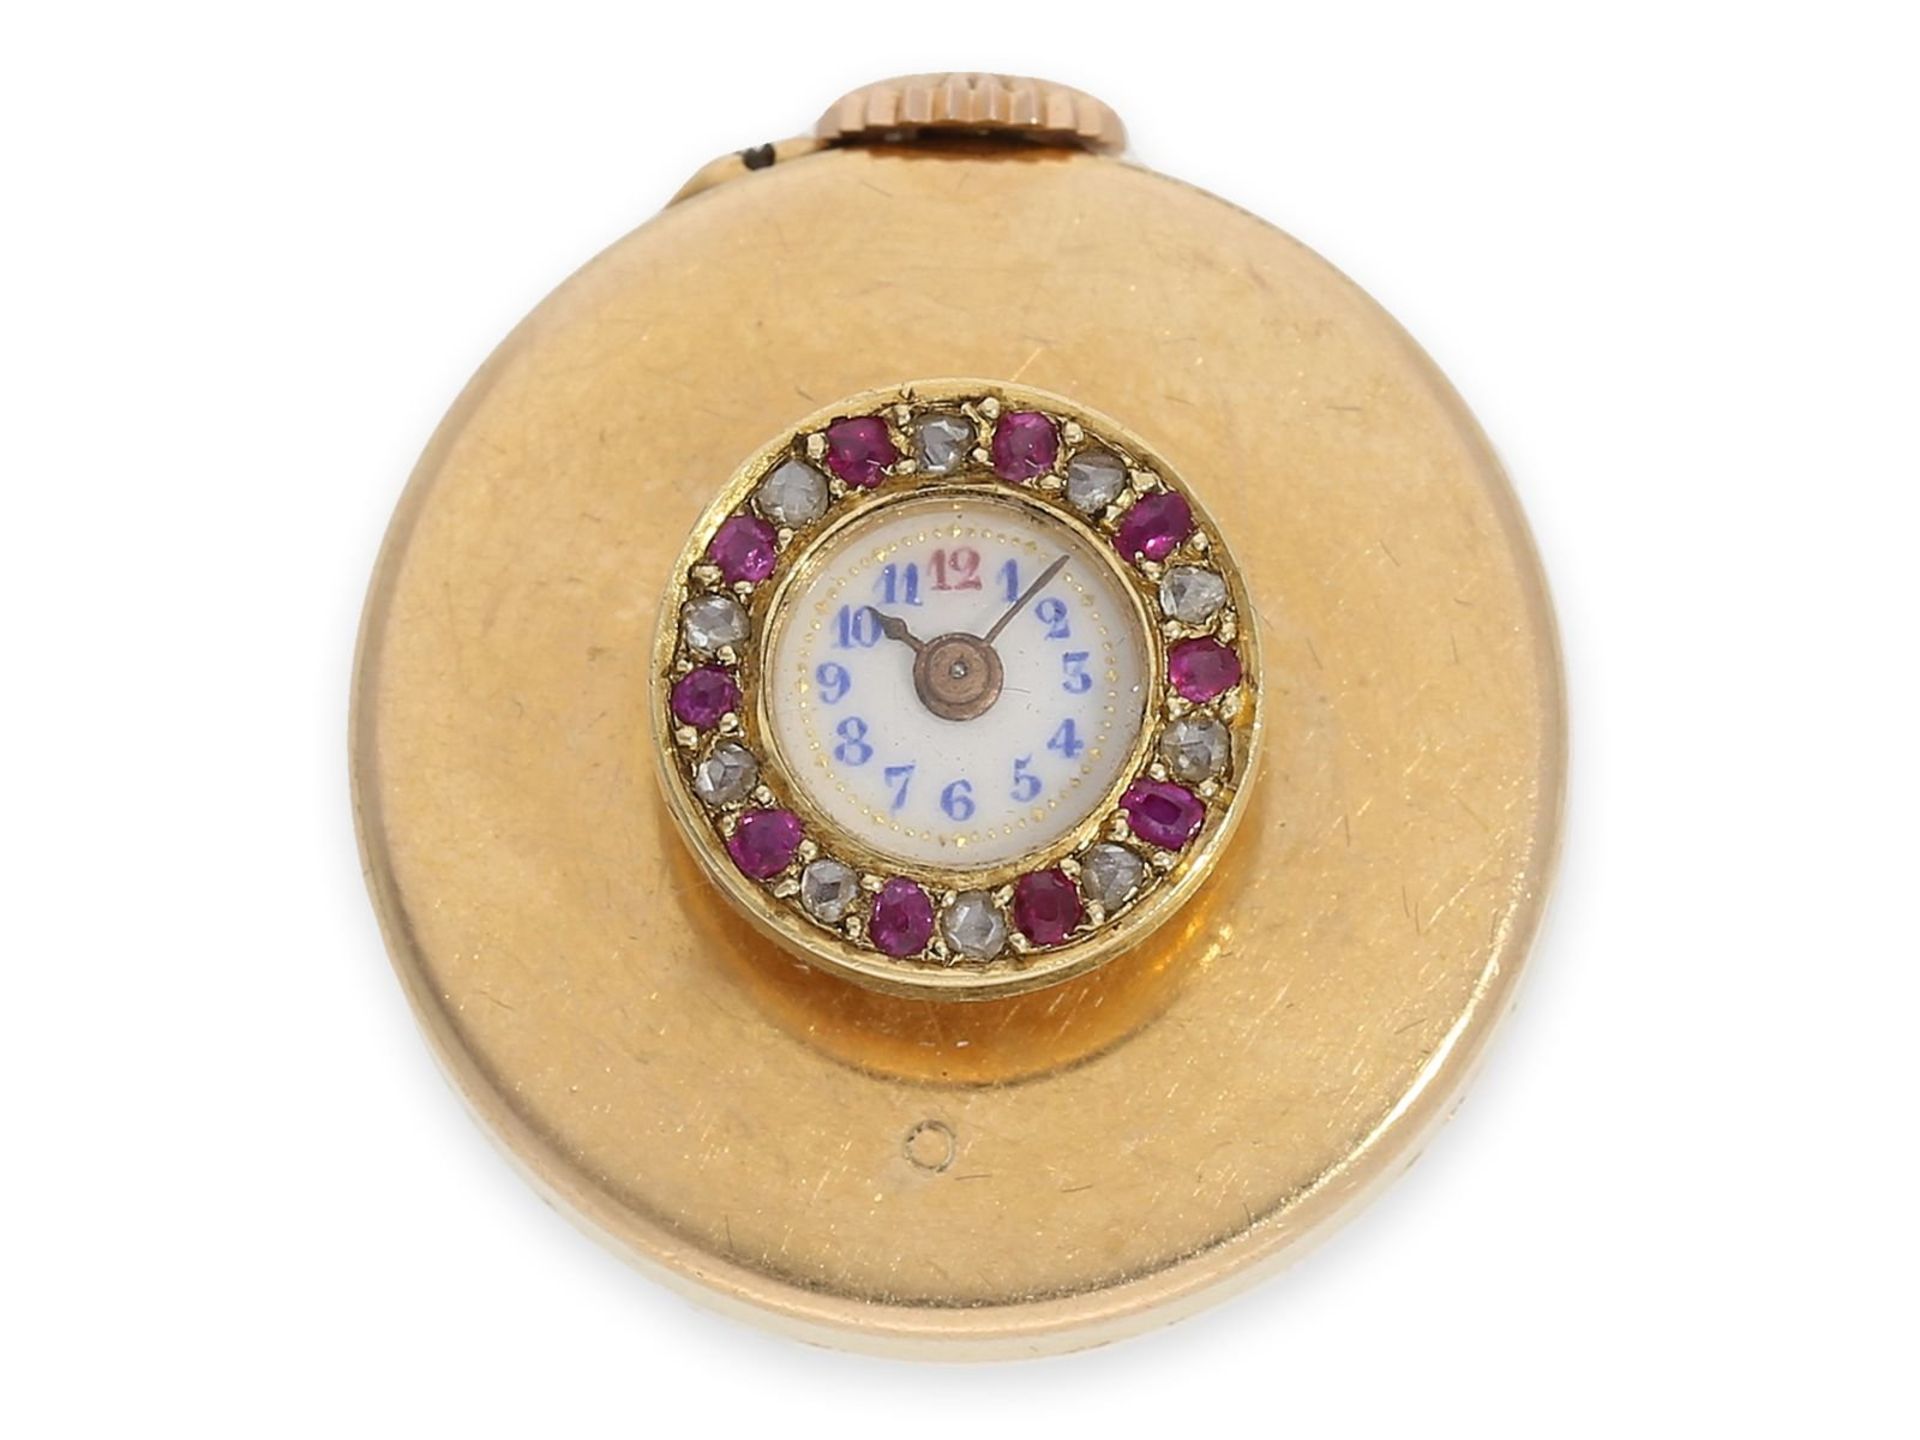 Knopfloch-Uhr: extrem rare Knopflochuhr in 18K Gold mit Diamant- und Rubinbesatz, punziert "bté s.g.